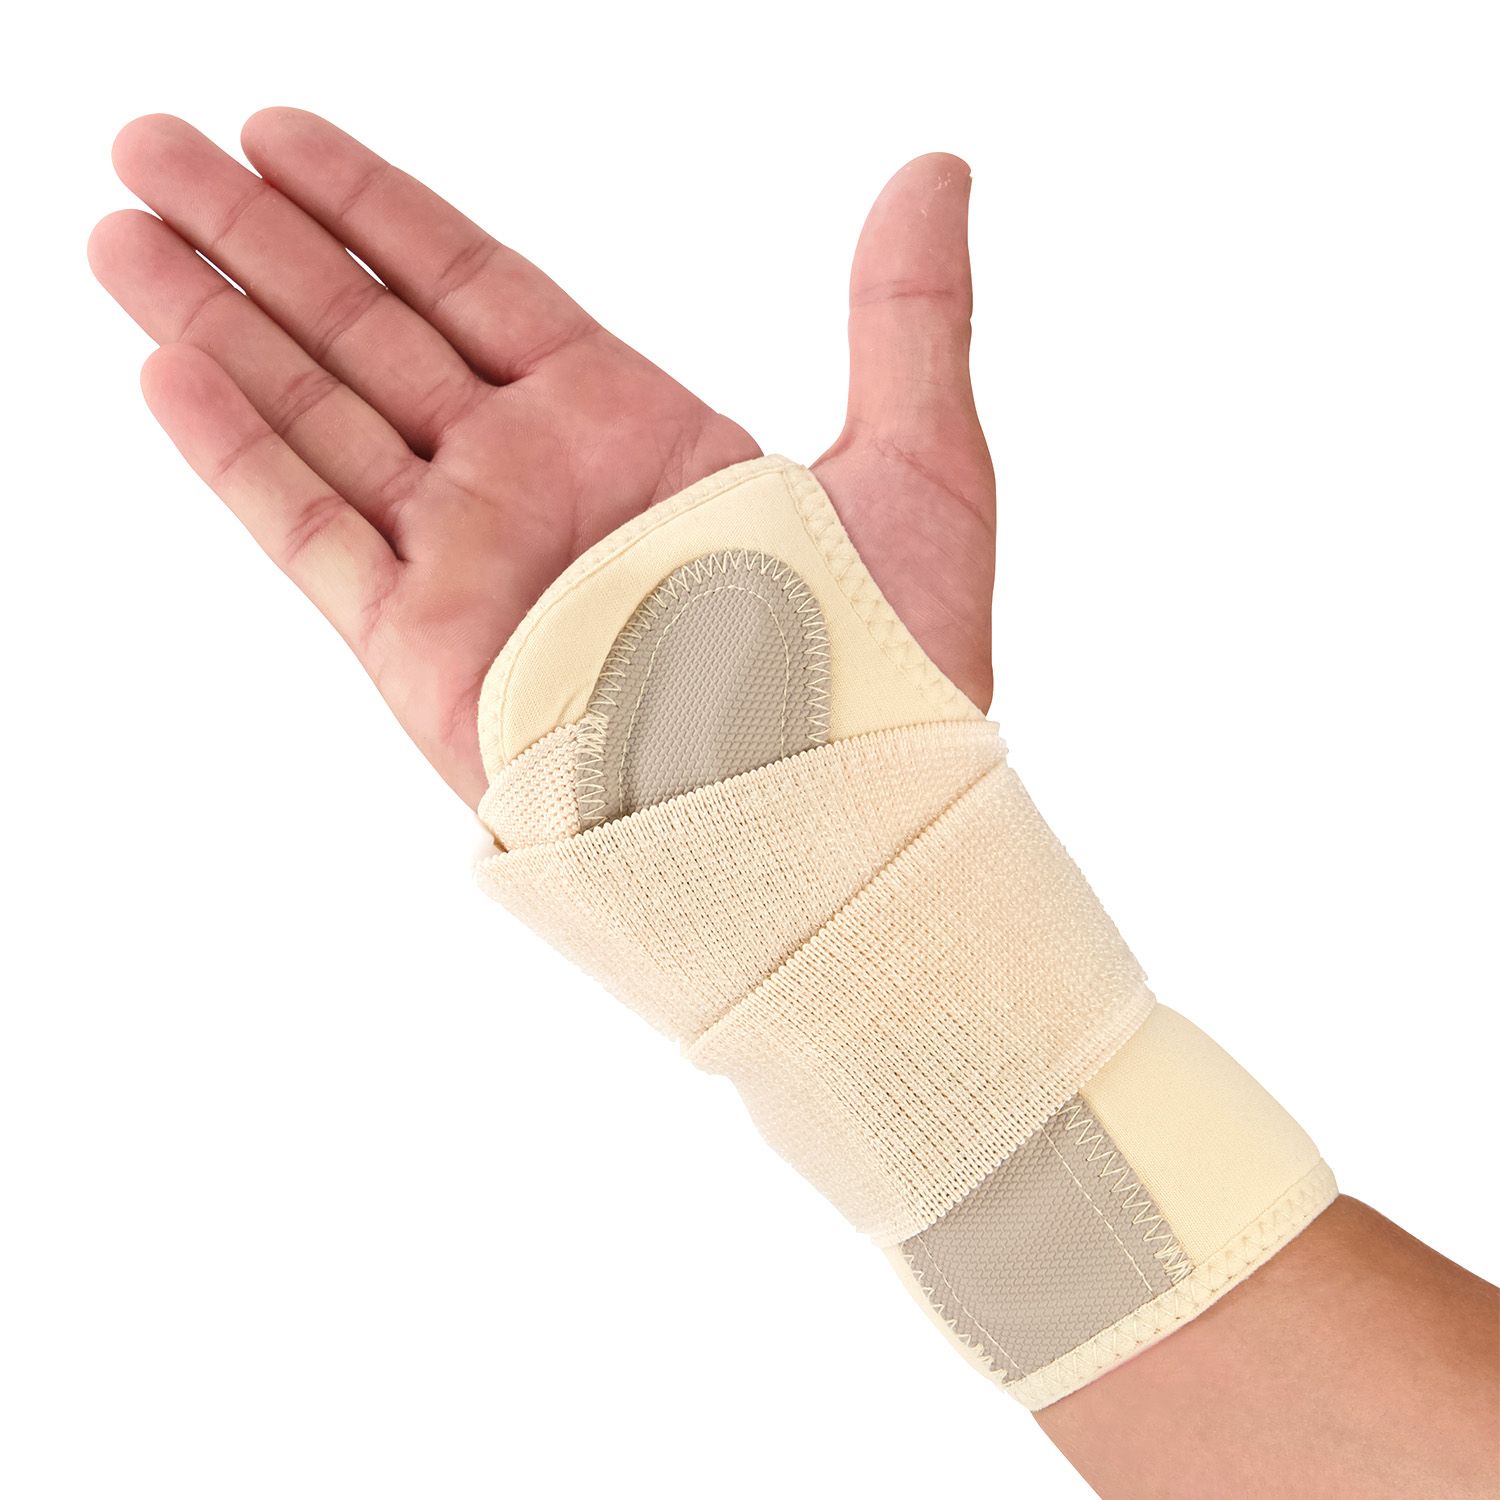 novamed lightweight wrist support inside for sale